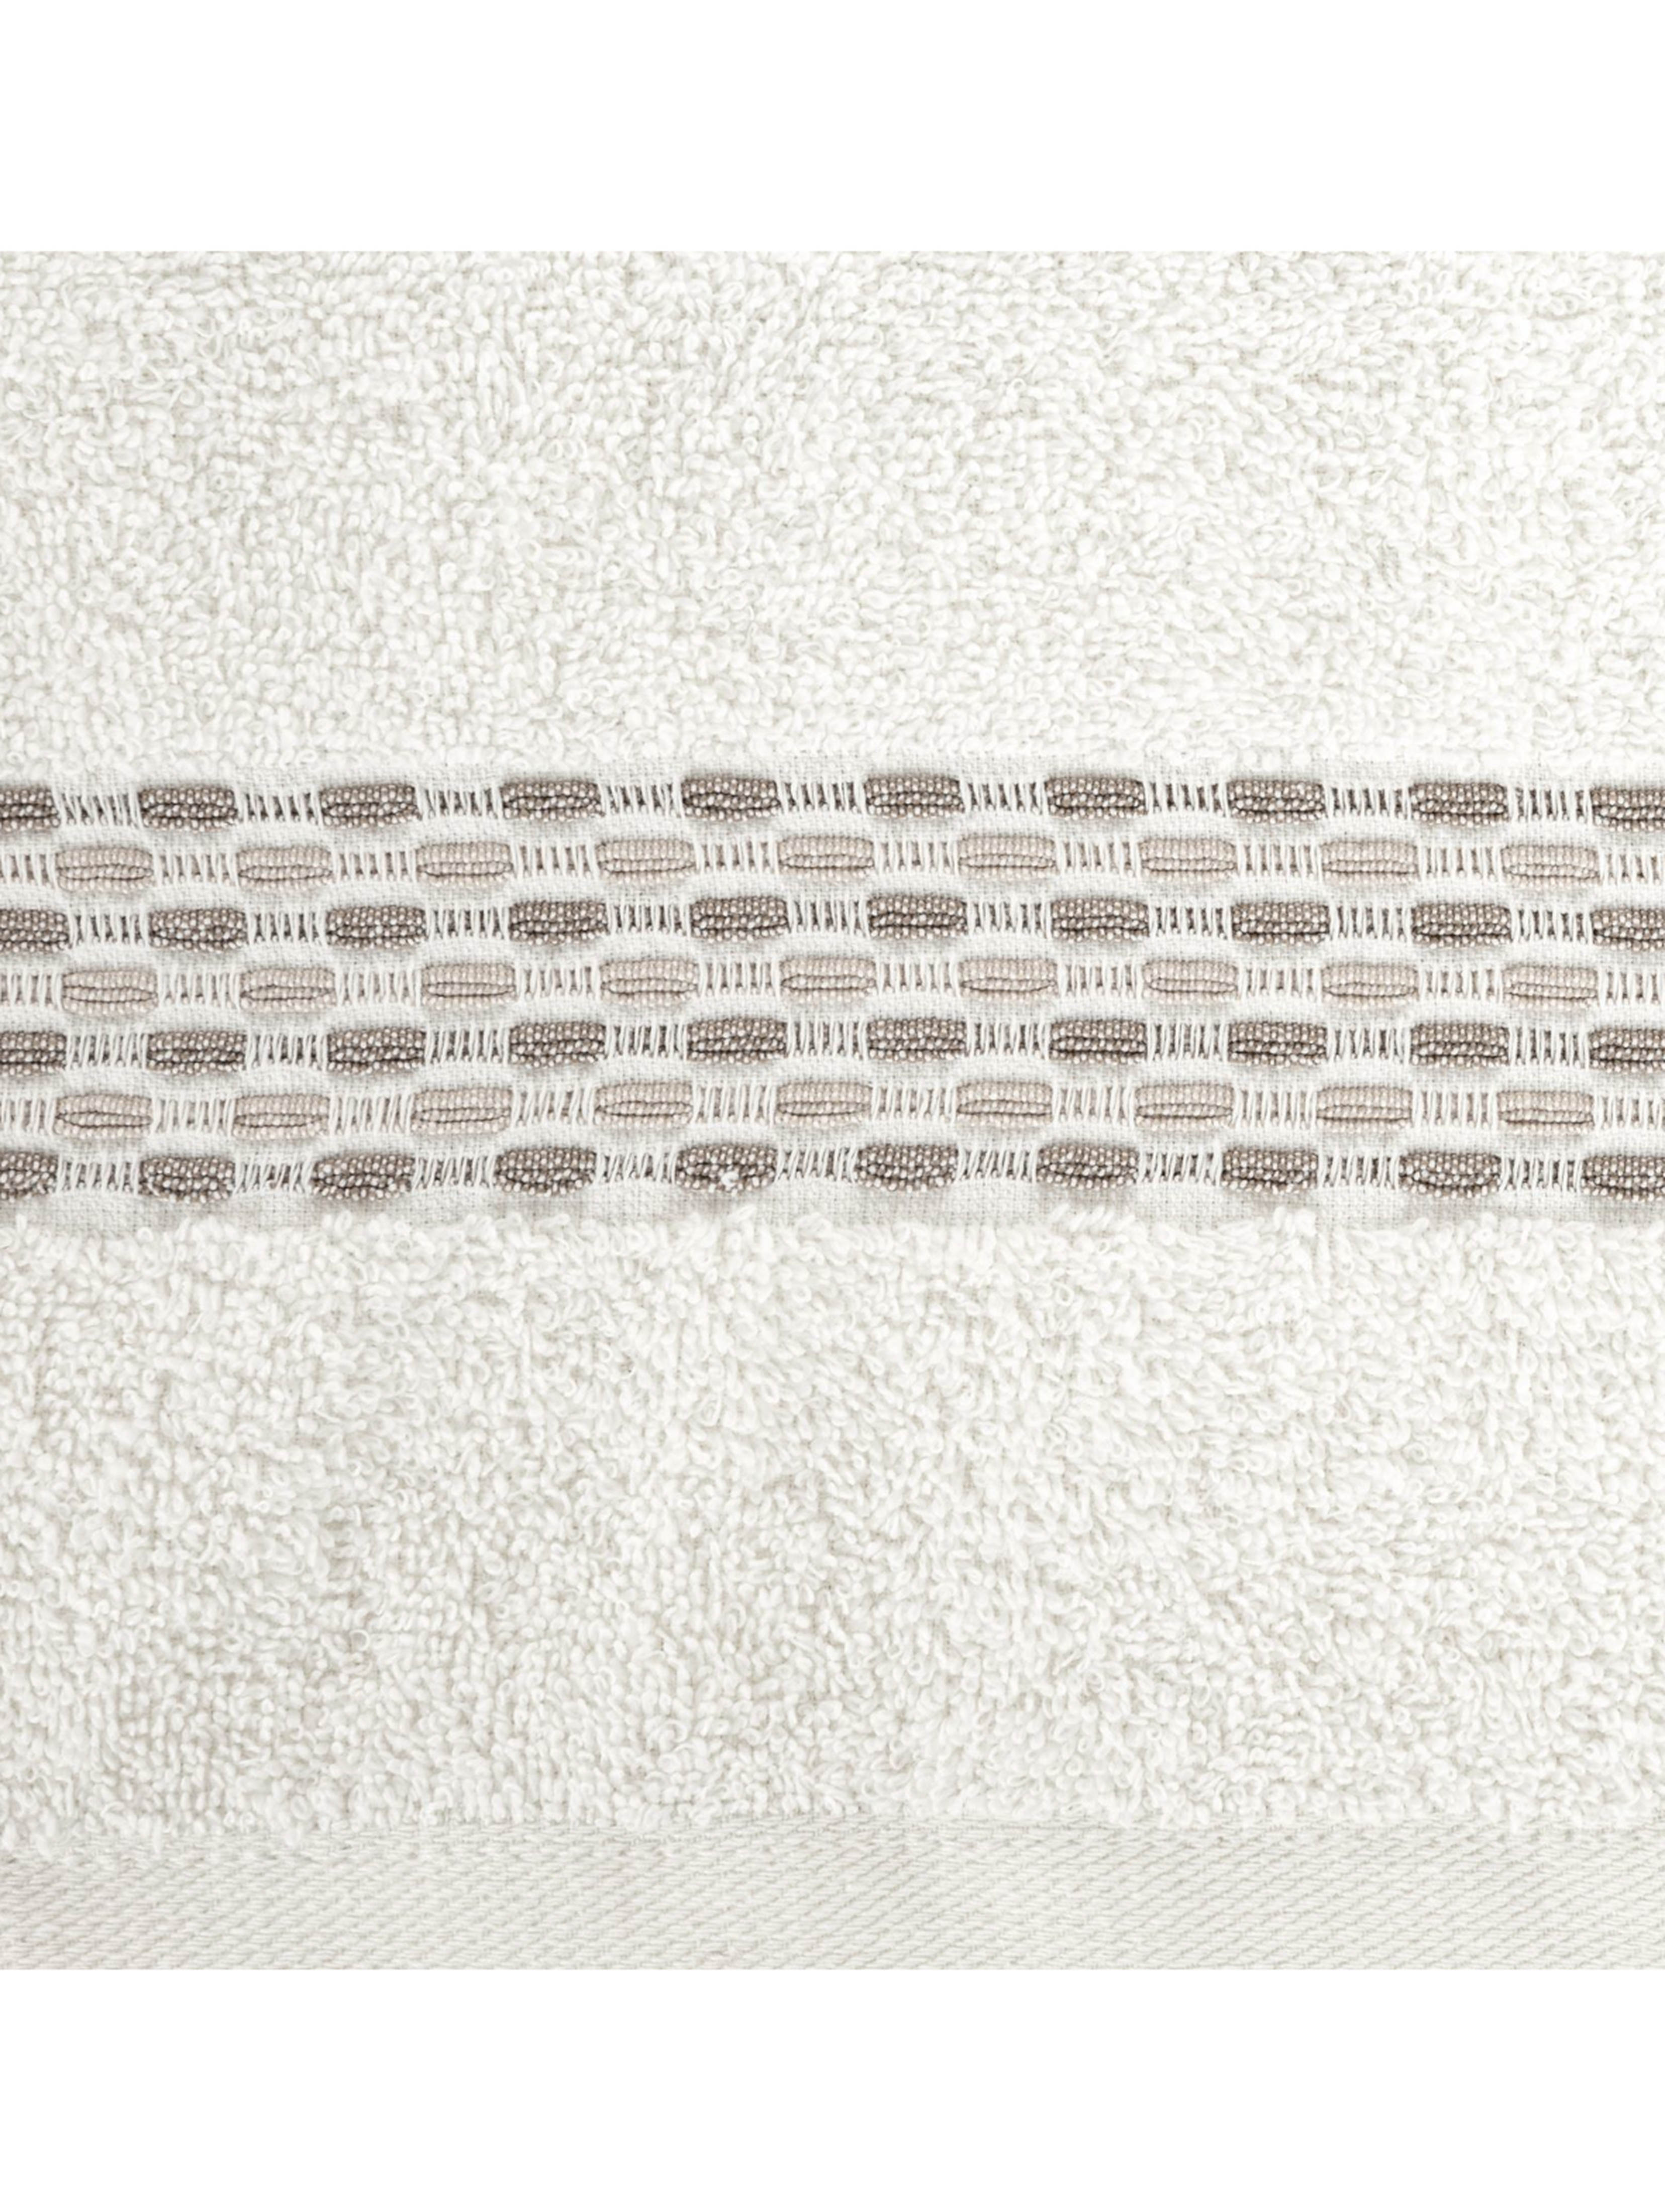 Kremowy ręcznik ze zdobieniami 70x140 cm